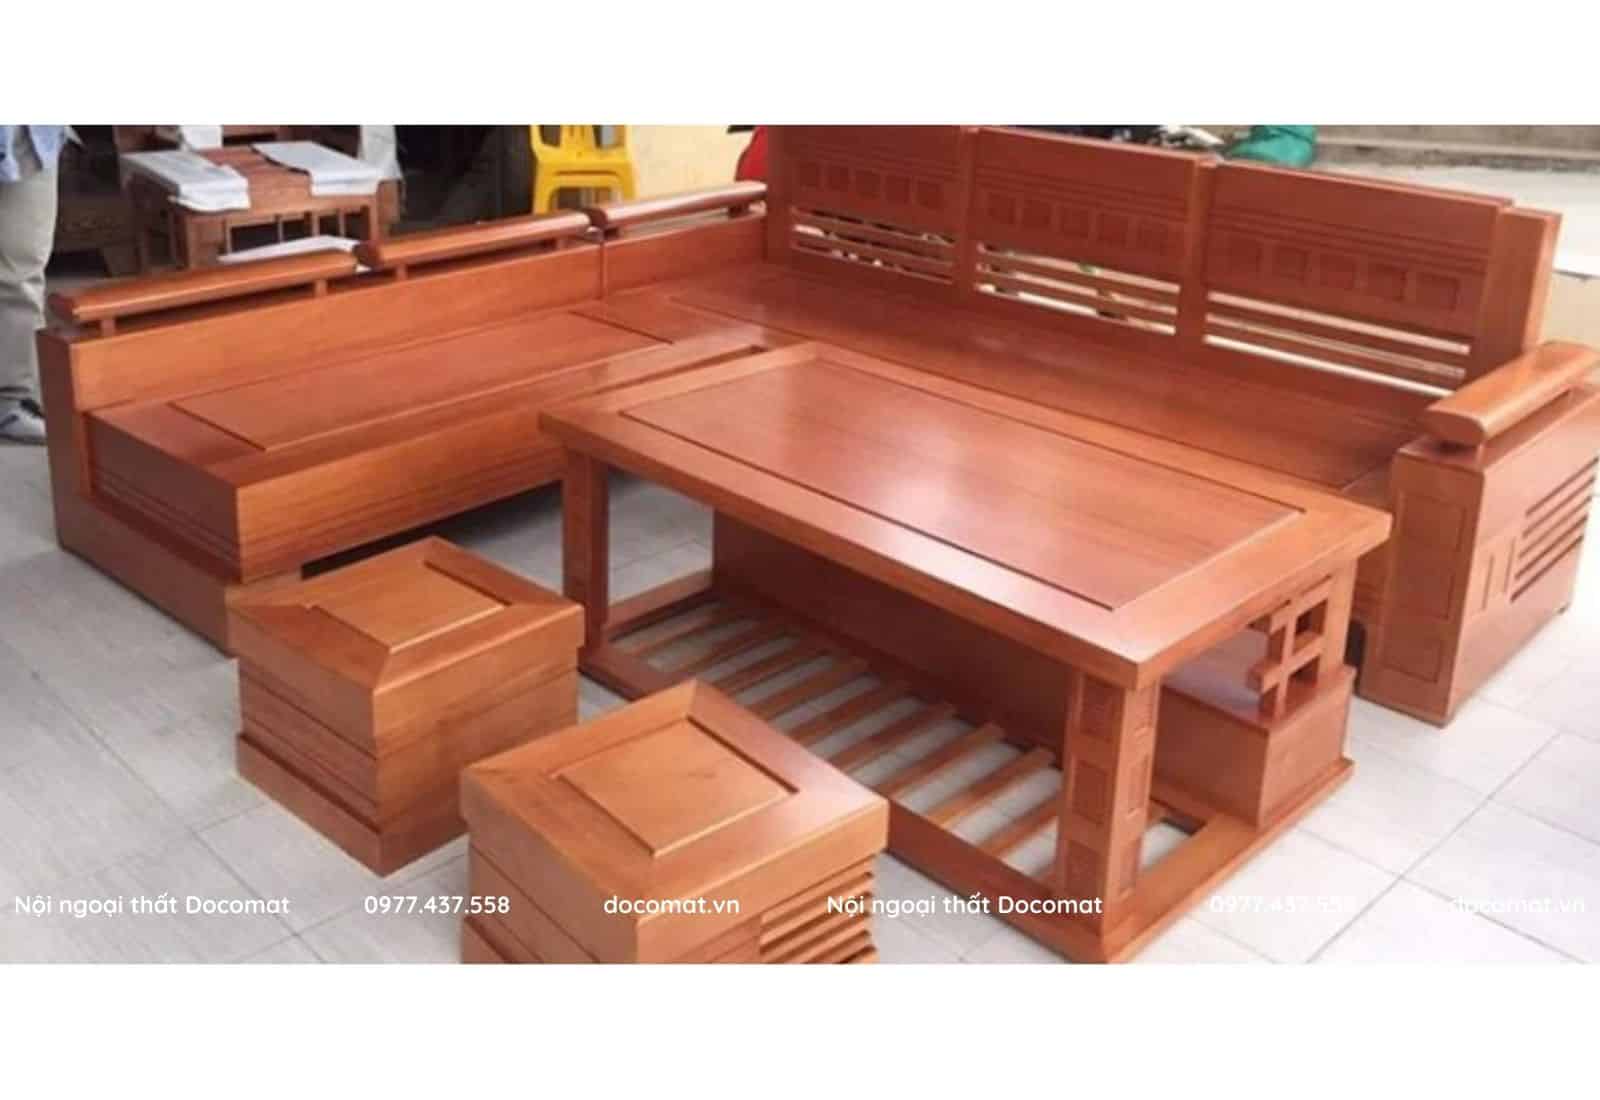 Sản phẩm nội thất gỗ tự nhiên bao gồm: bàn ghế, vách trang trí